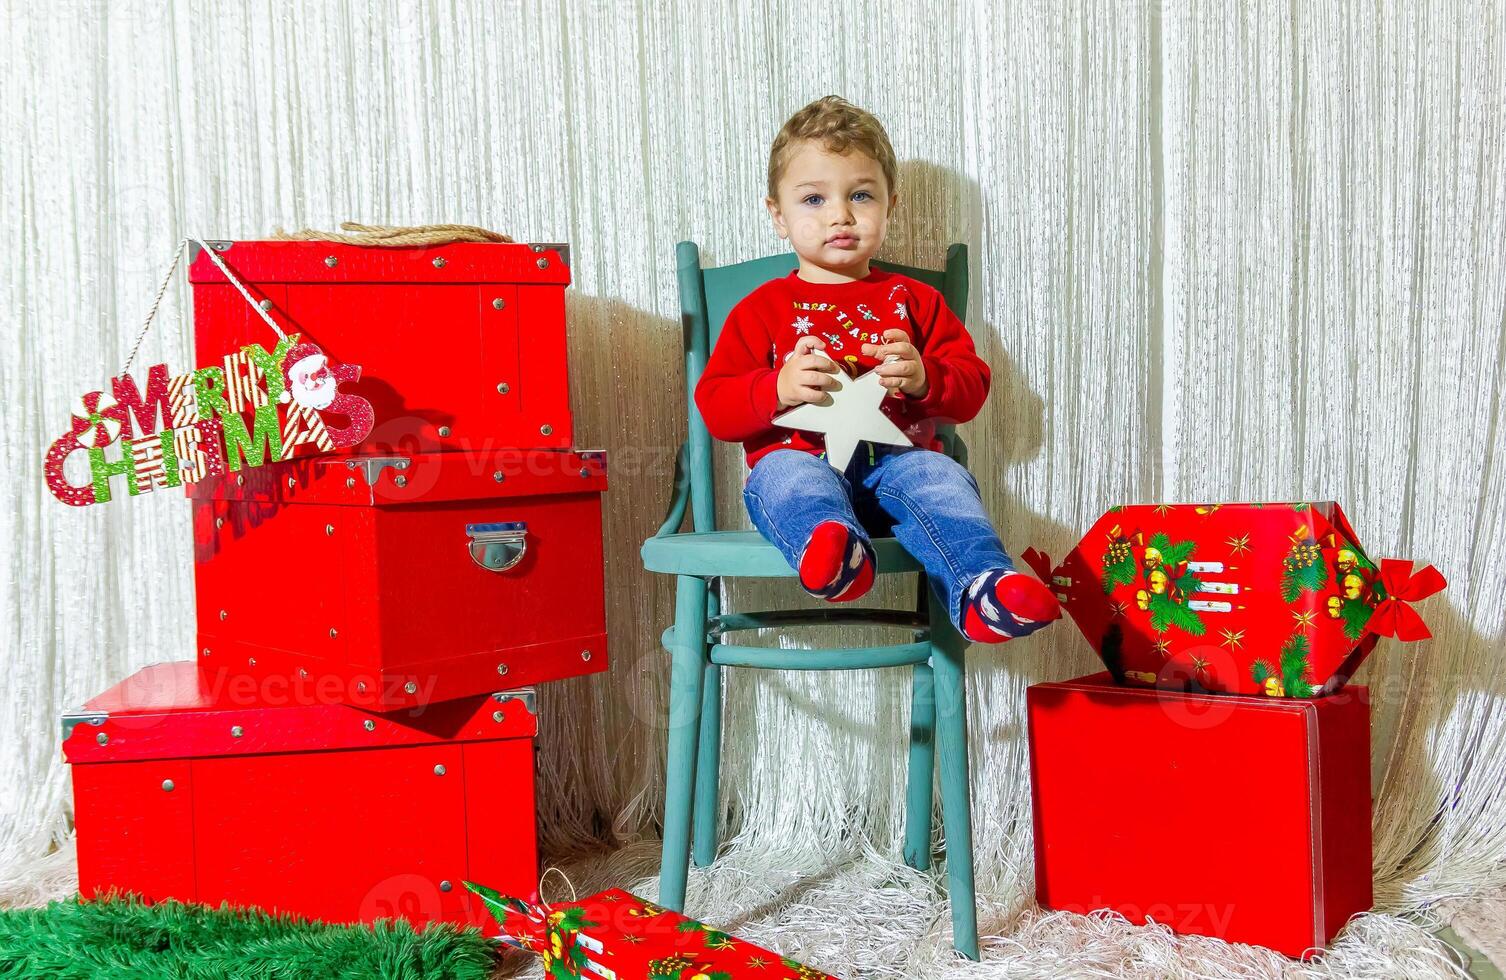 de weinig kind spelen met Kerstmis decoraties in studio, weinig kind met Kerstmis bal foto